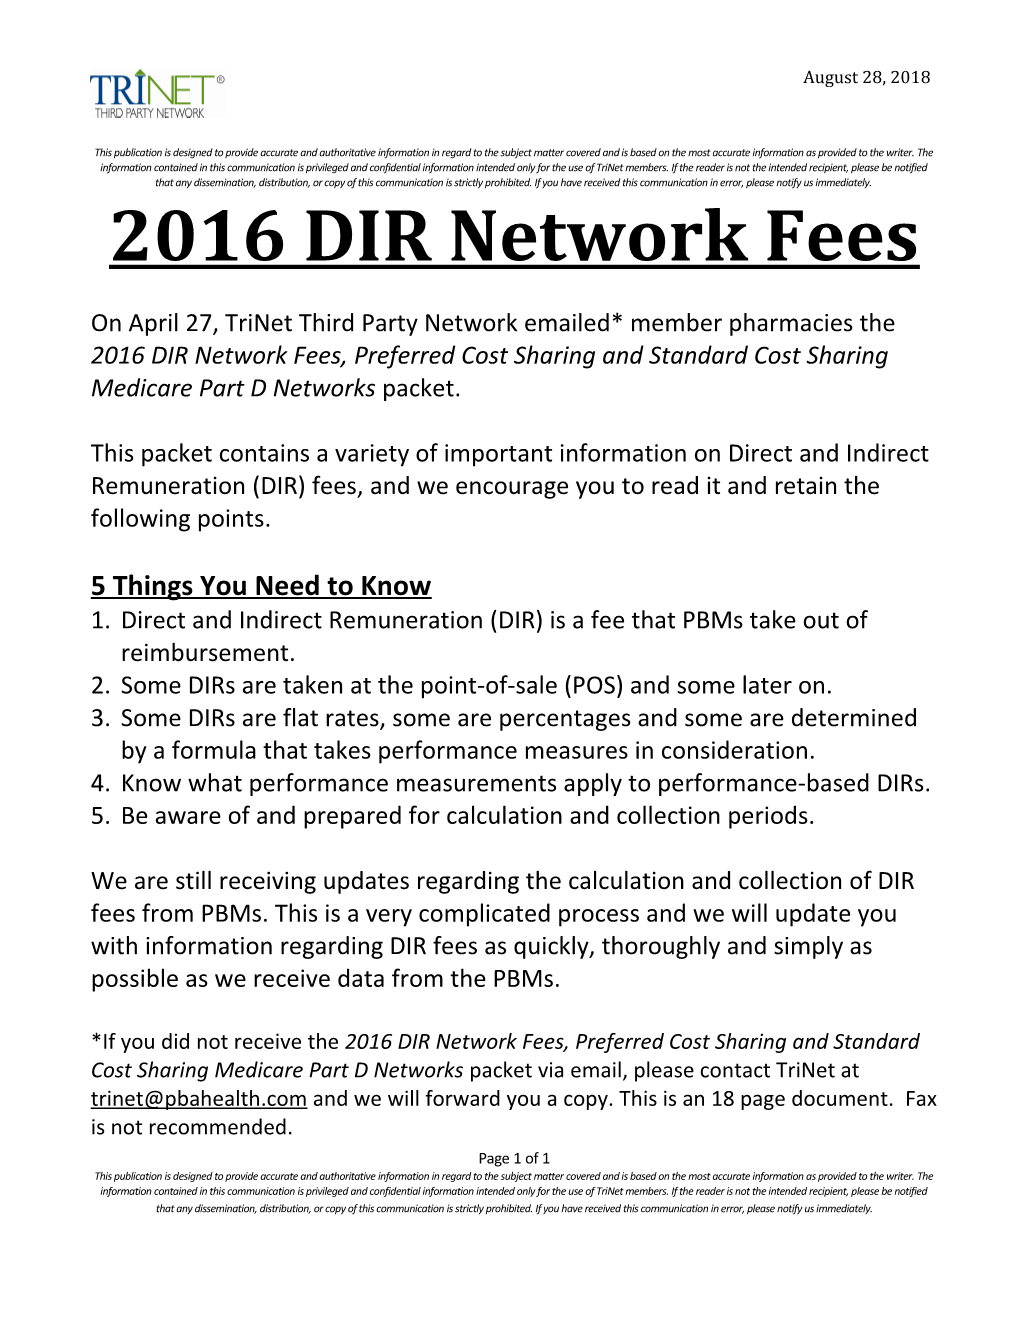 2016 DIR Network Fees